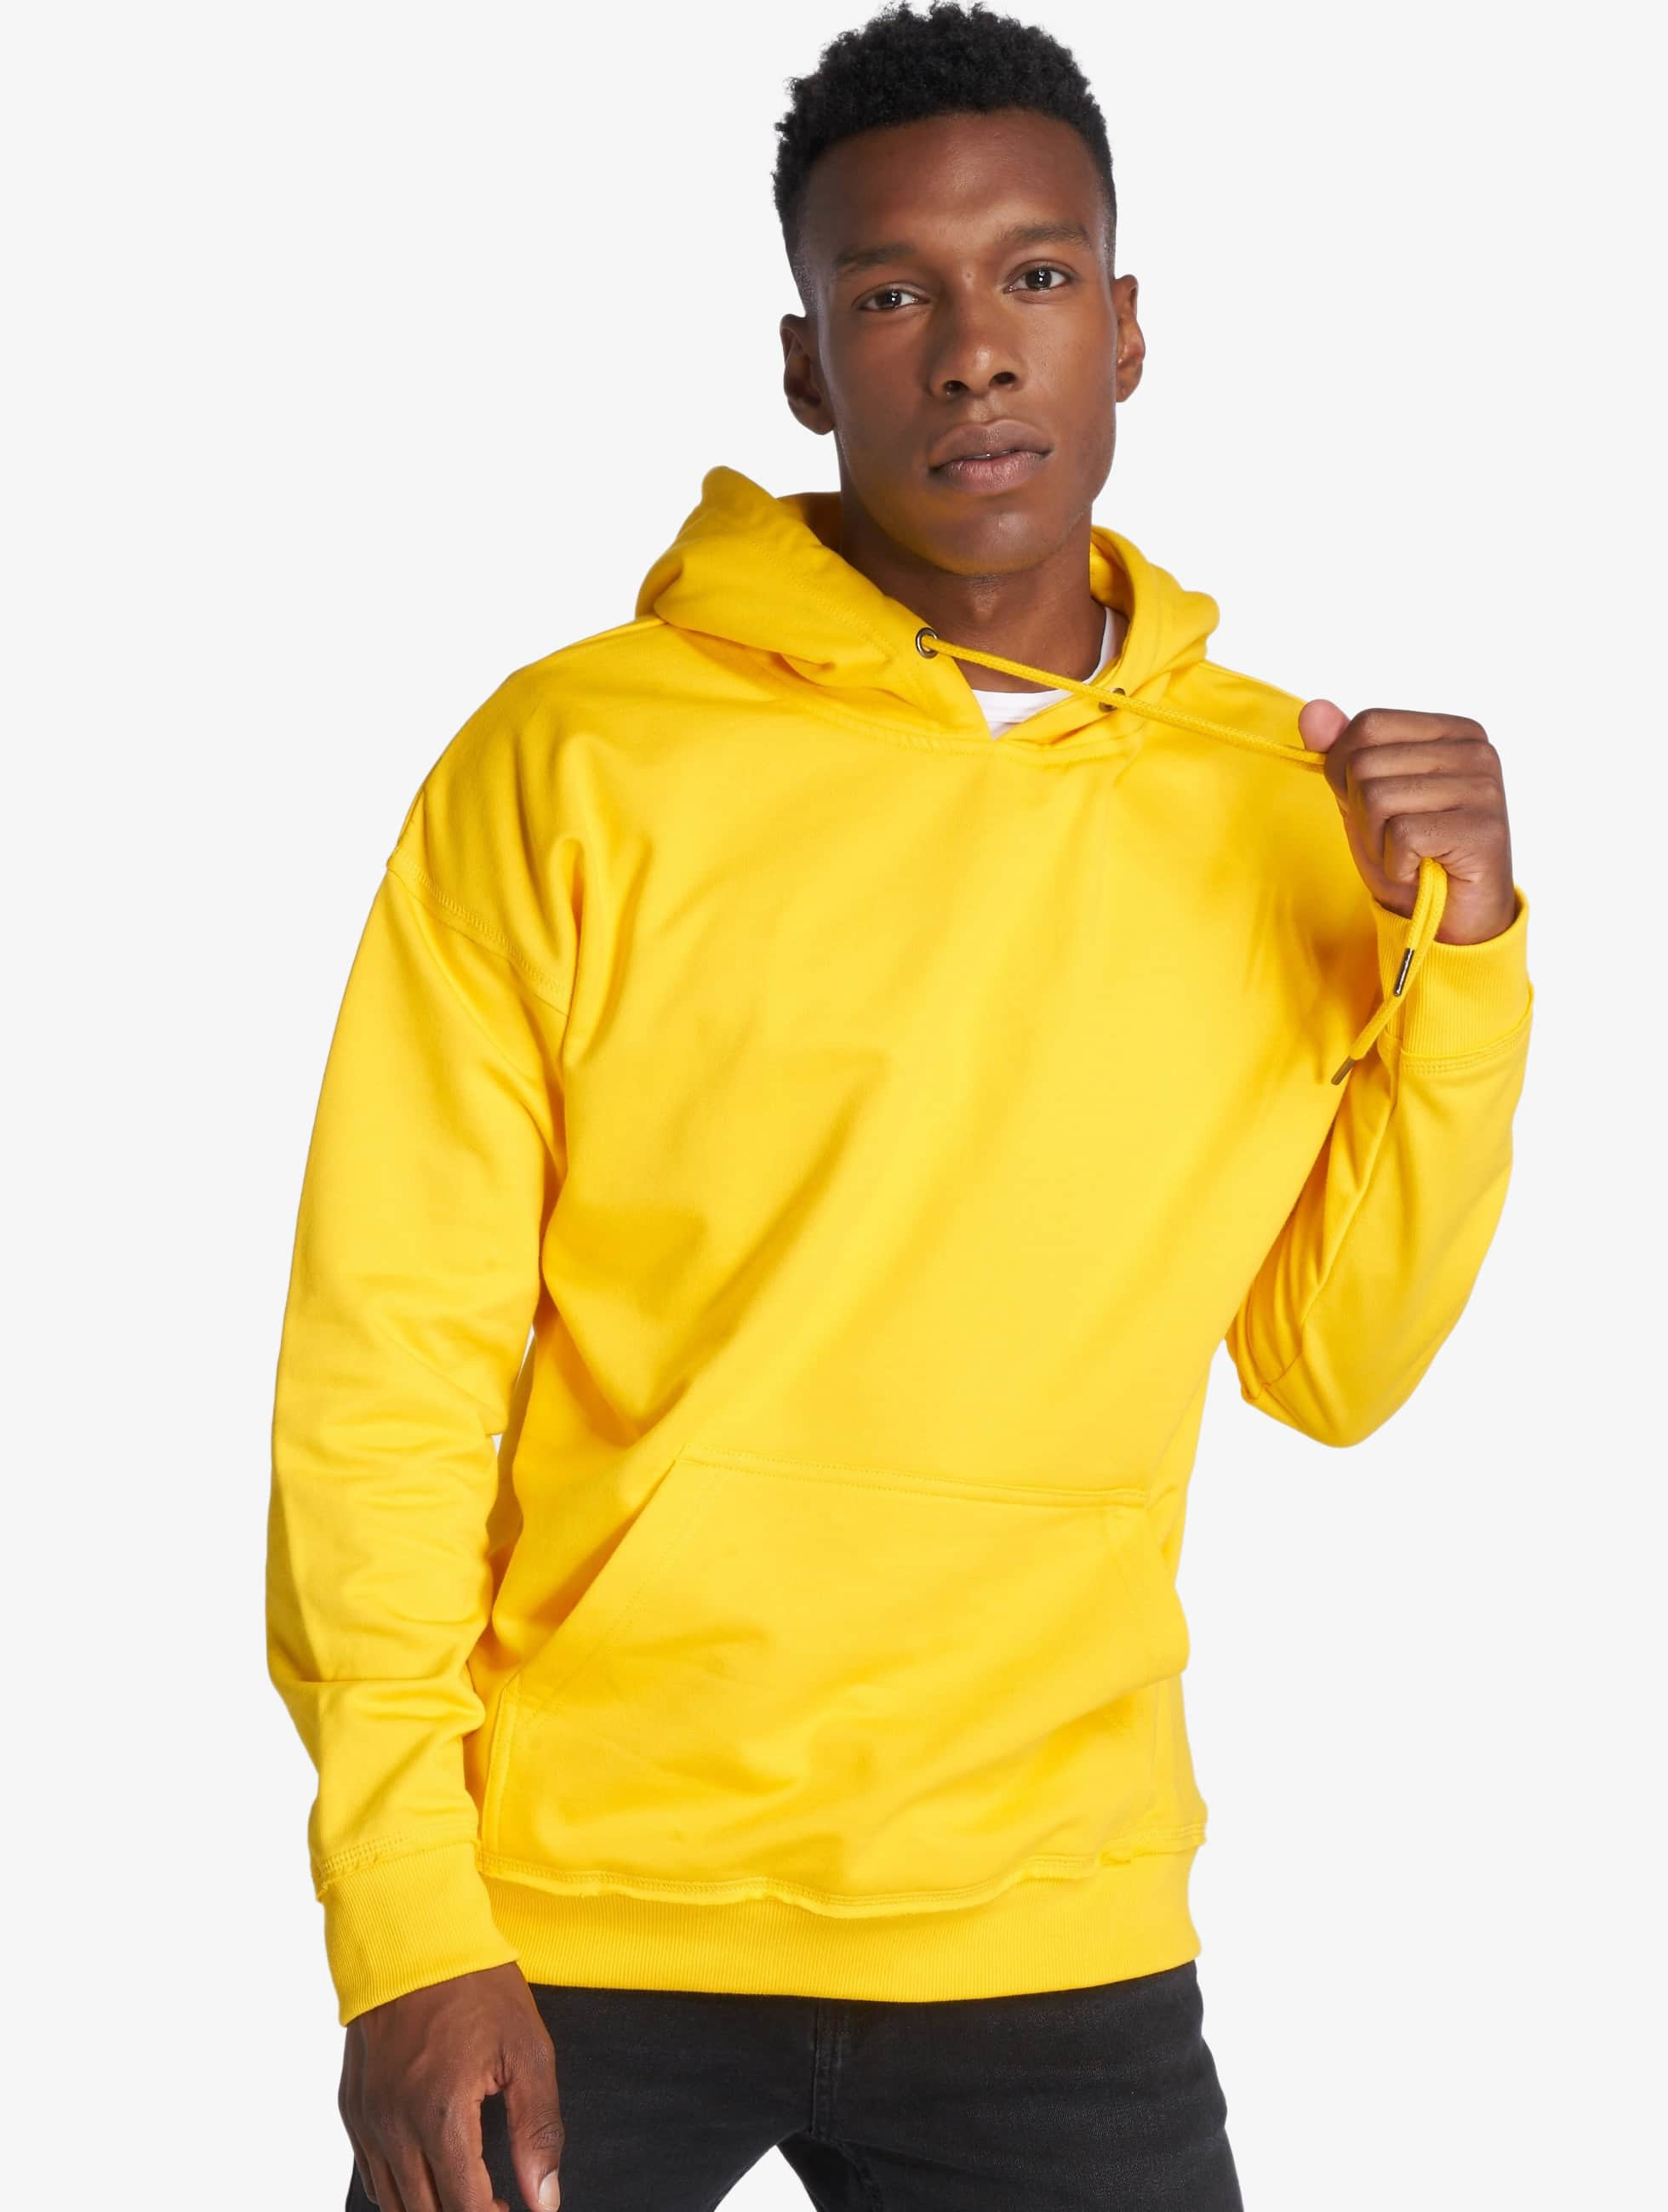 hoodie jaune homme